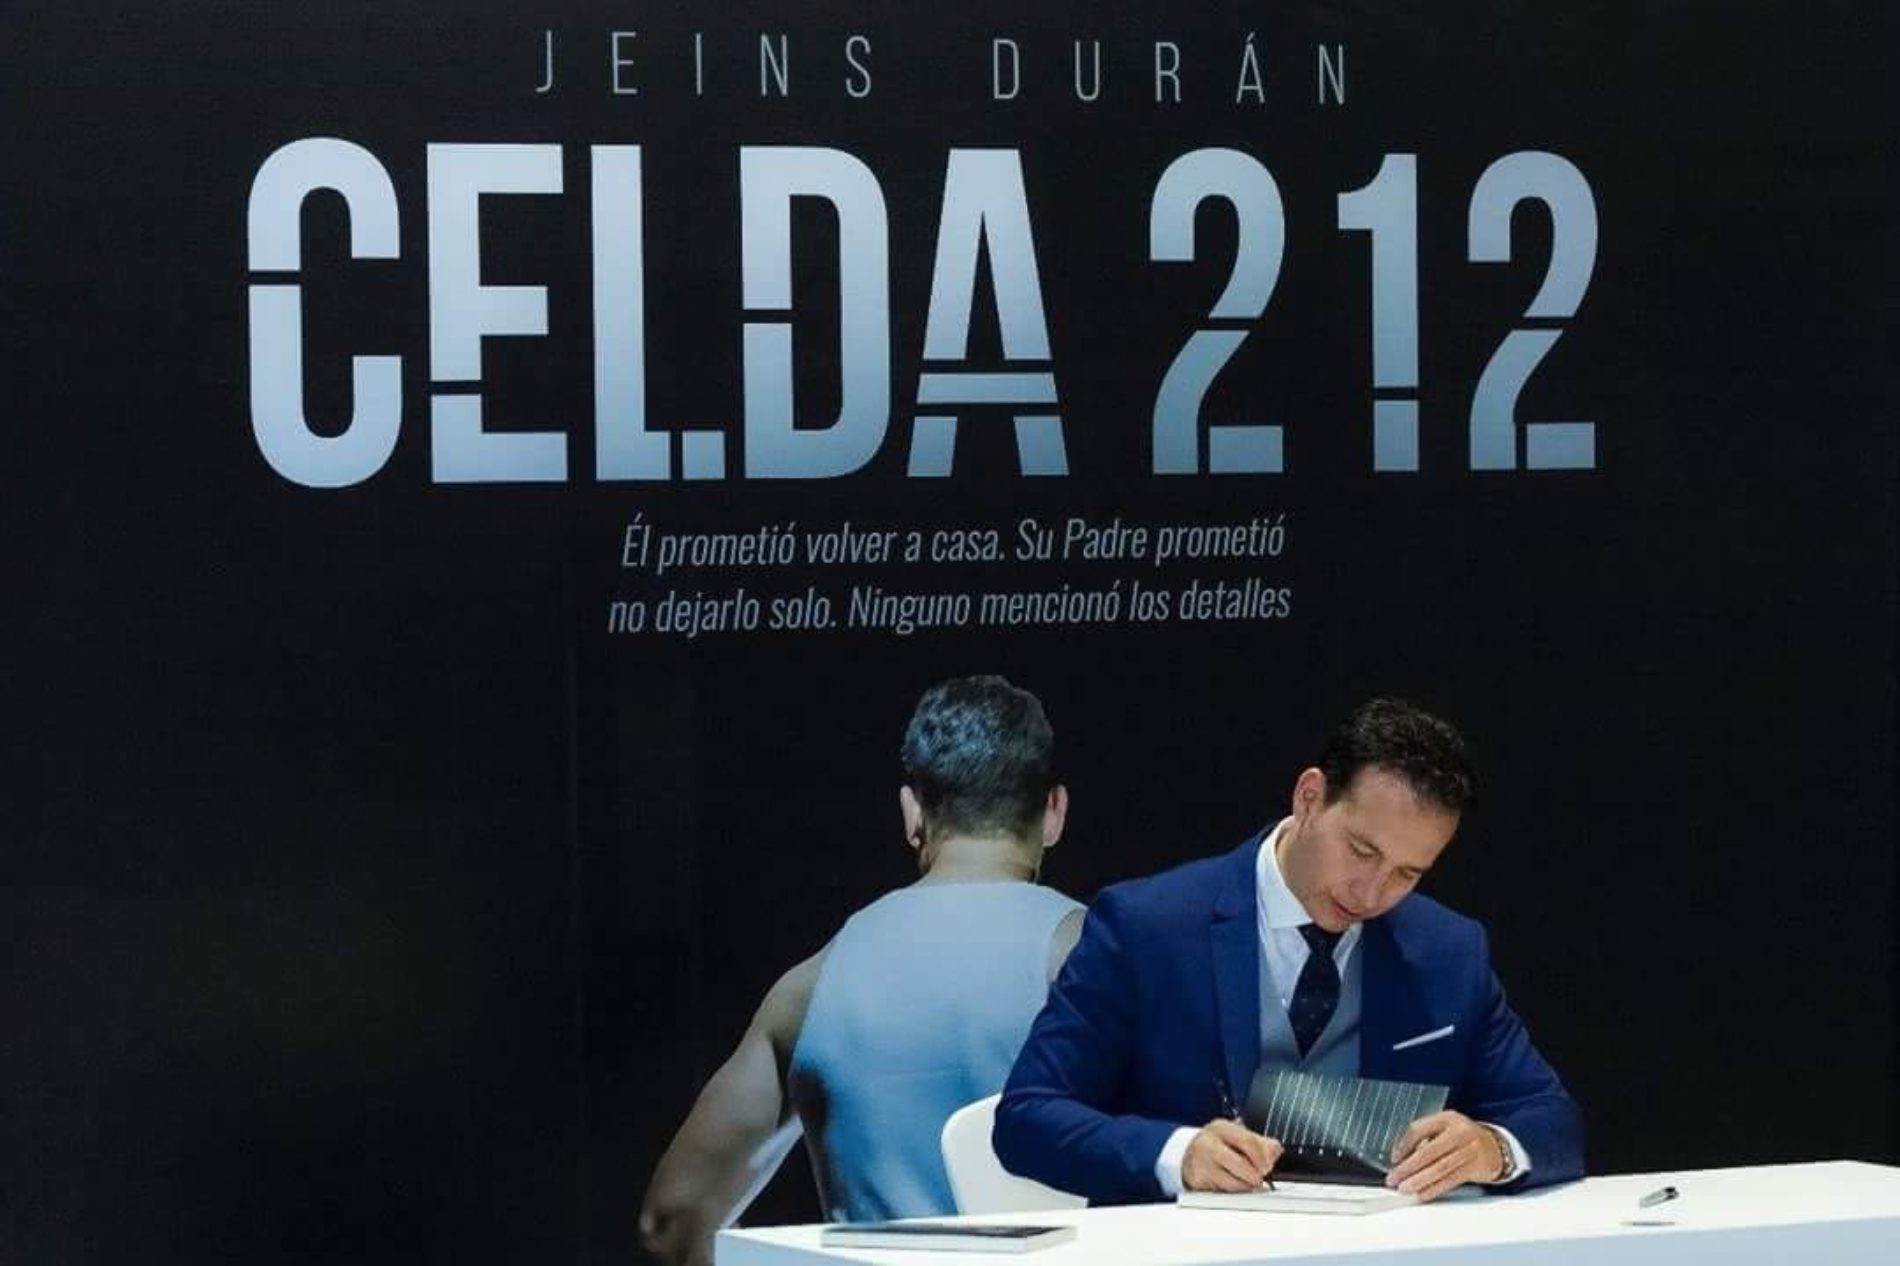 CELDA 212, EL LIBRO DE JEINS DURÁN, ESTÁ EN LA FILBO 2019